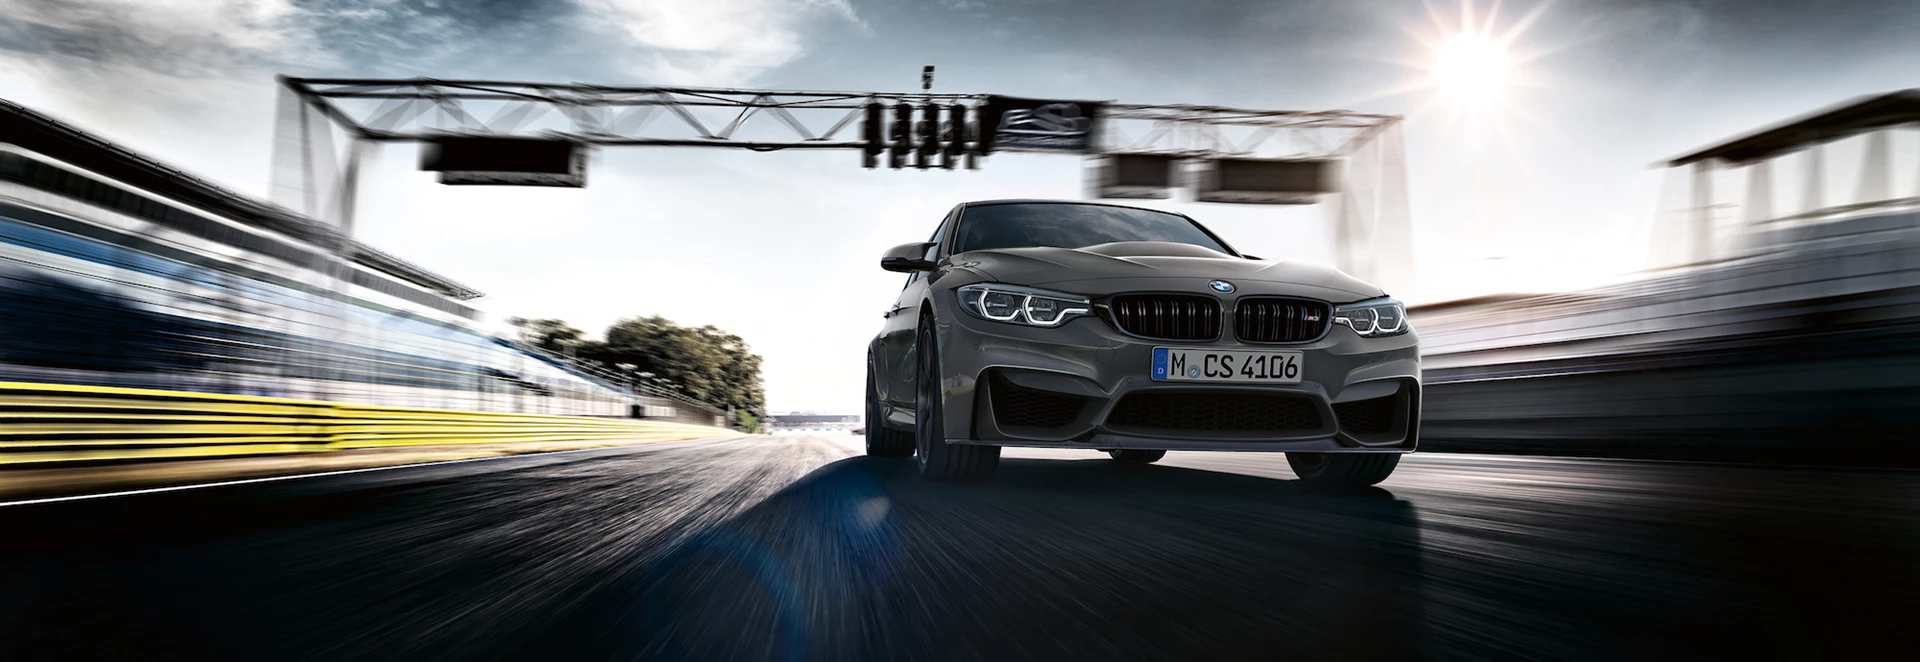 BMW reveals M3 CS special edition 